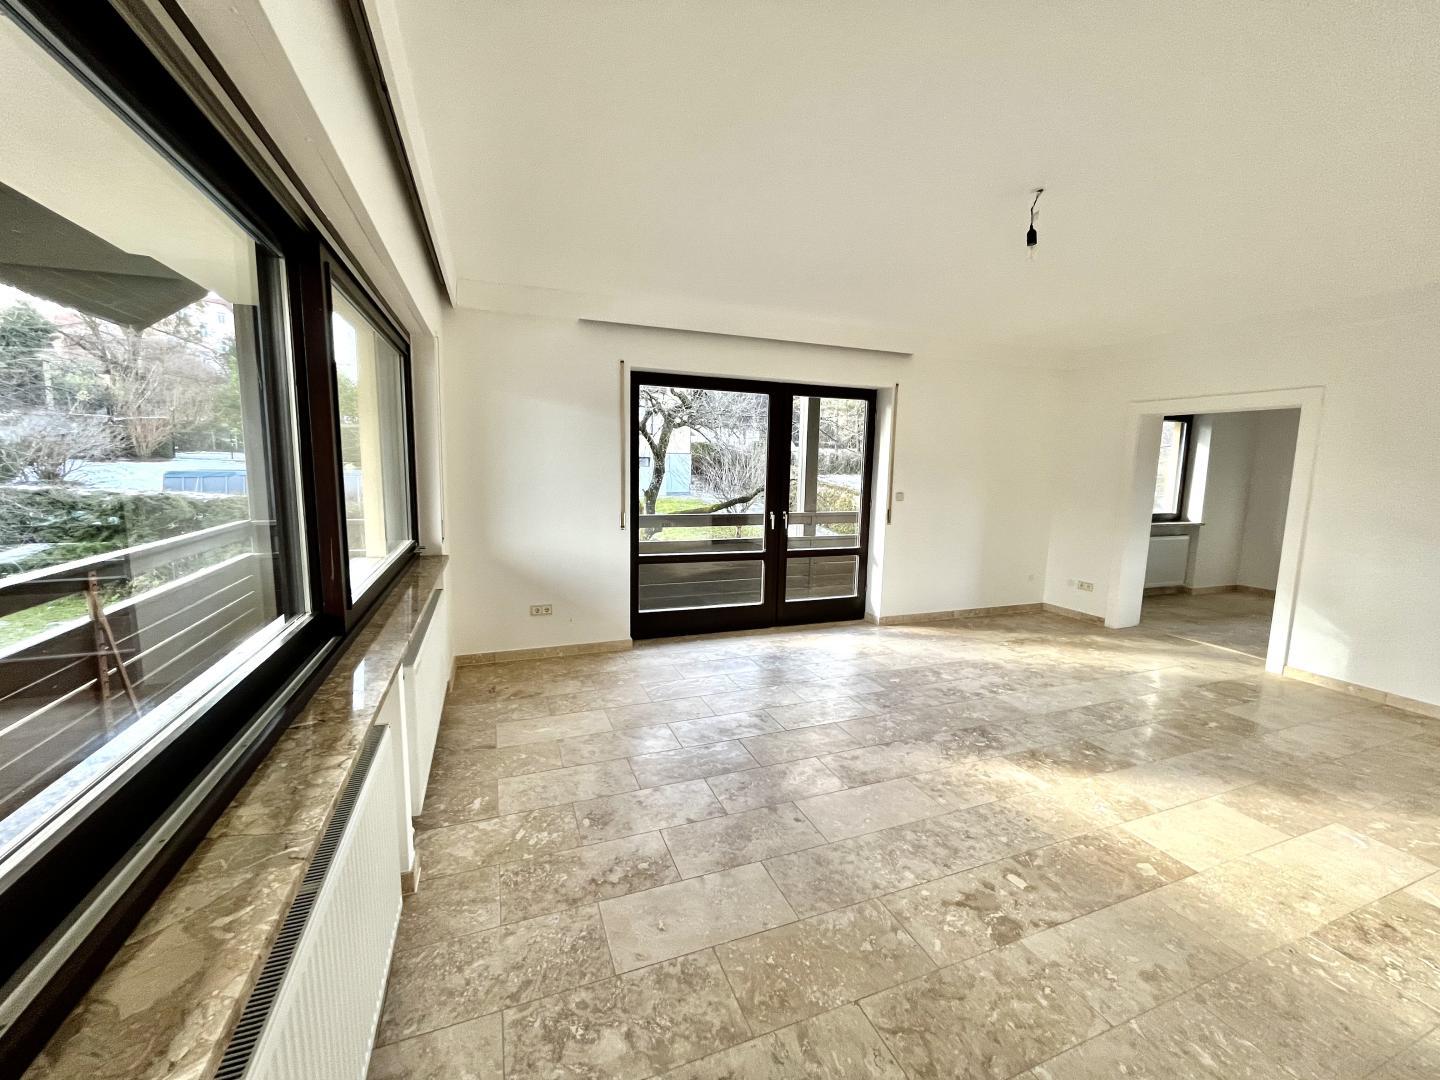 Wohnung zum Mieten: 8043 Graz - Wohnzimmer mit Ausgang auf den Balkon und Verbindung zur Küche